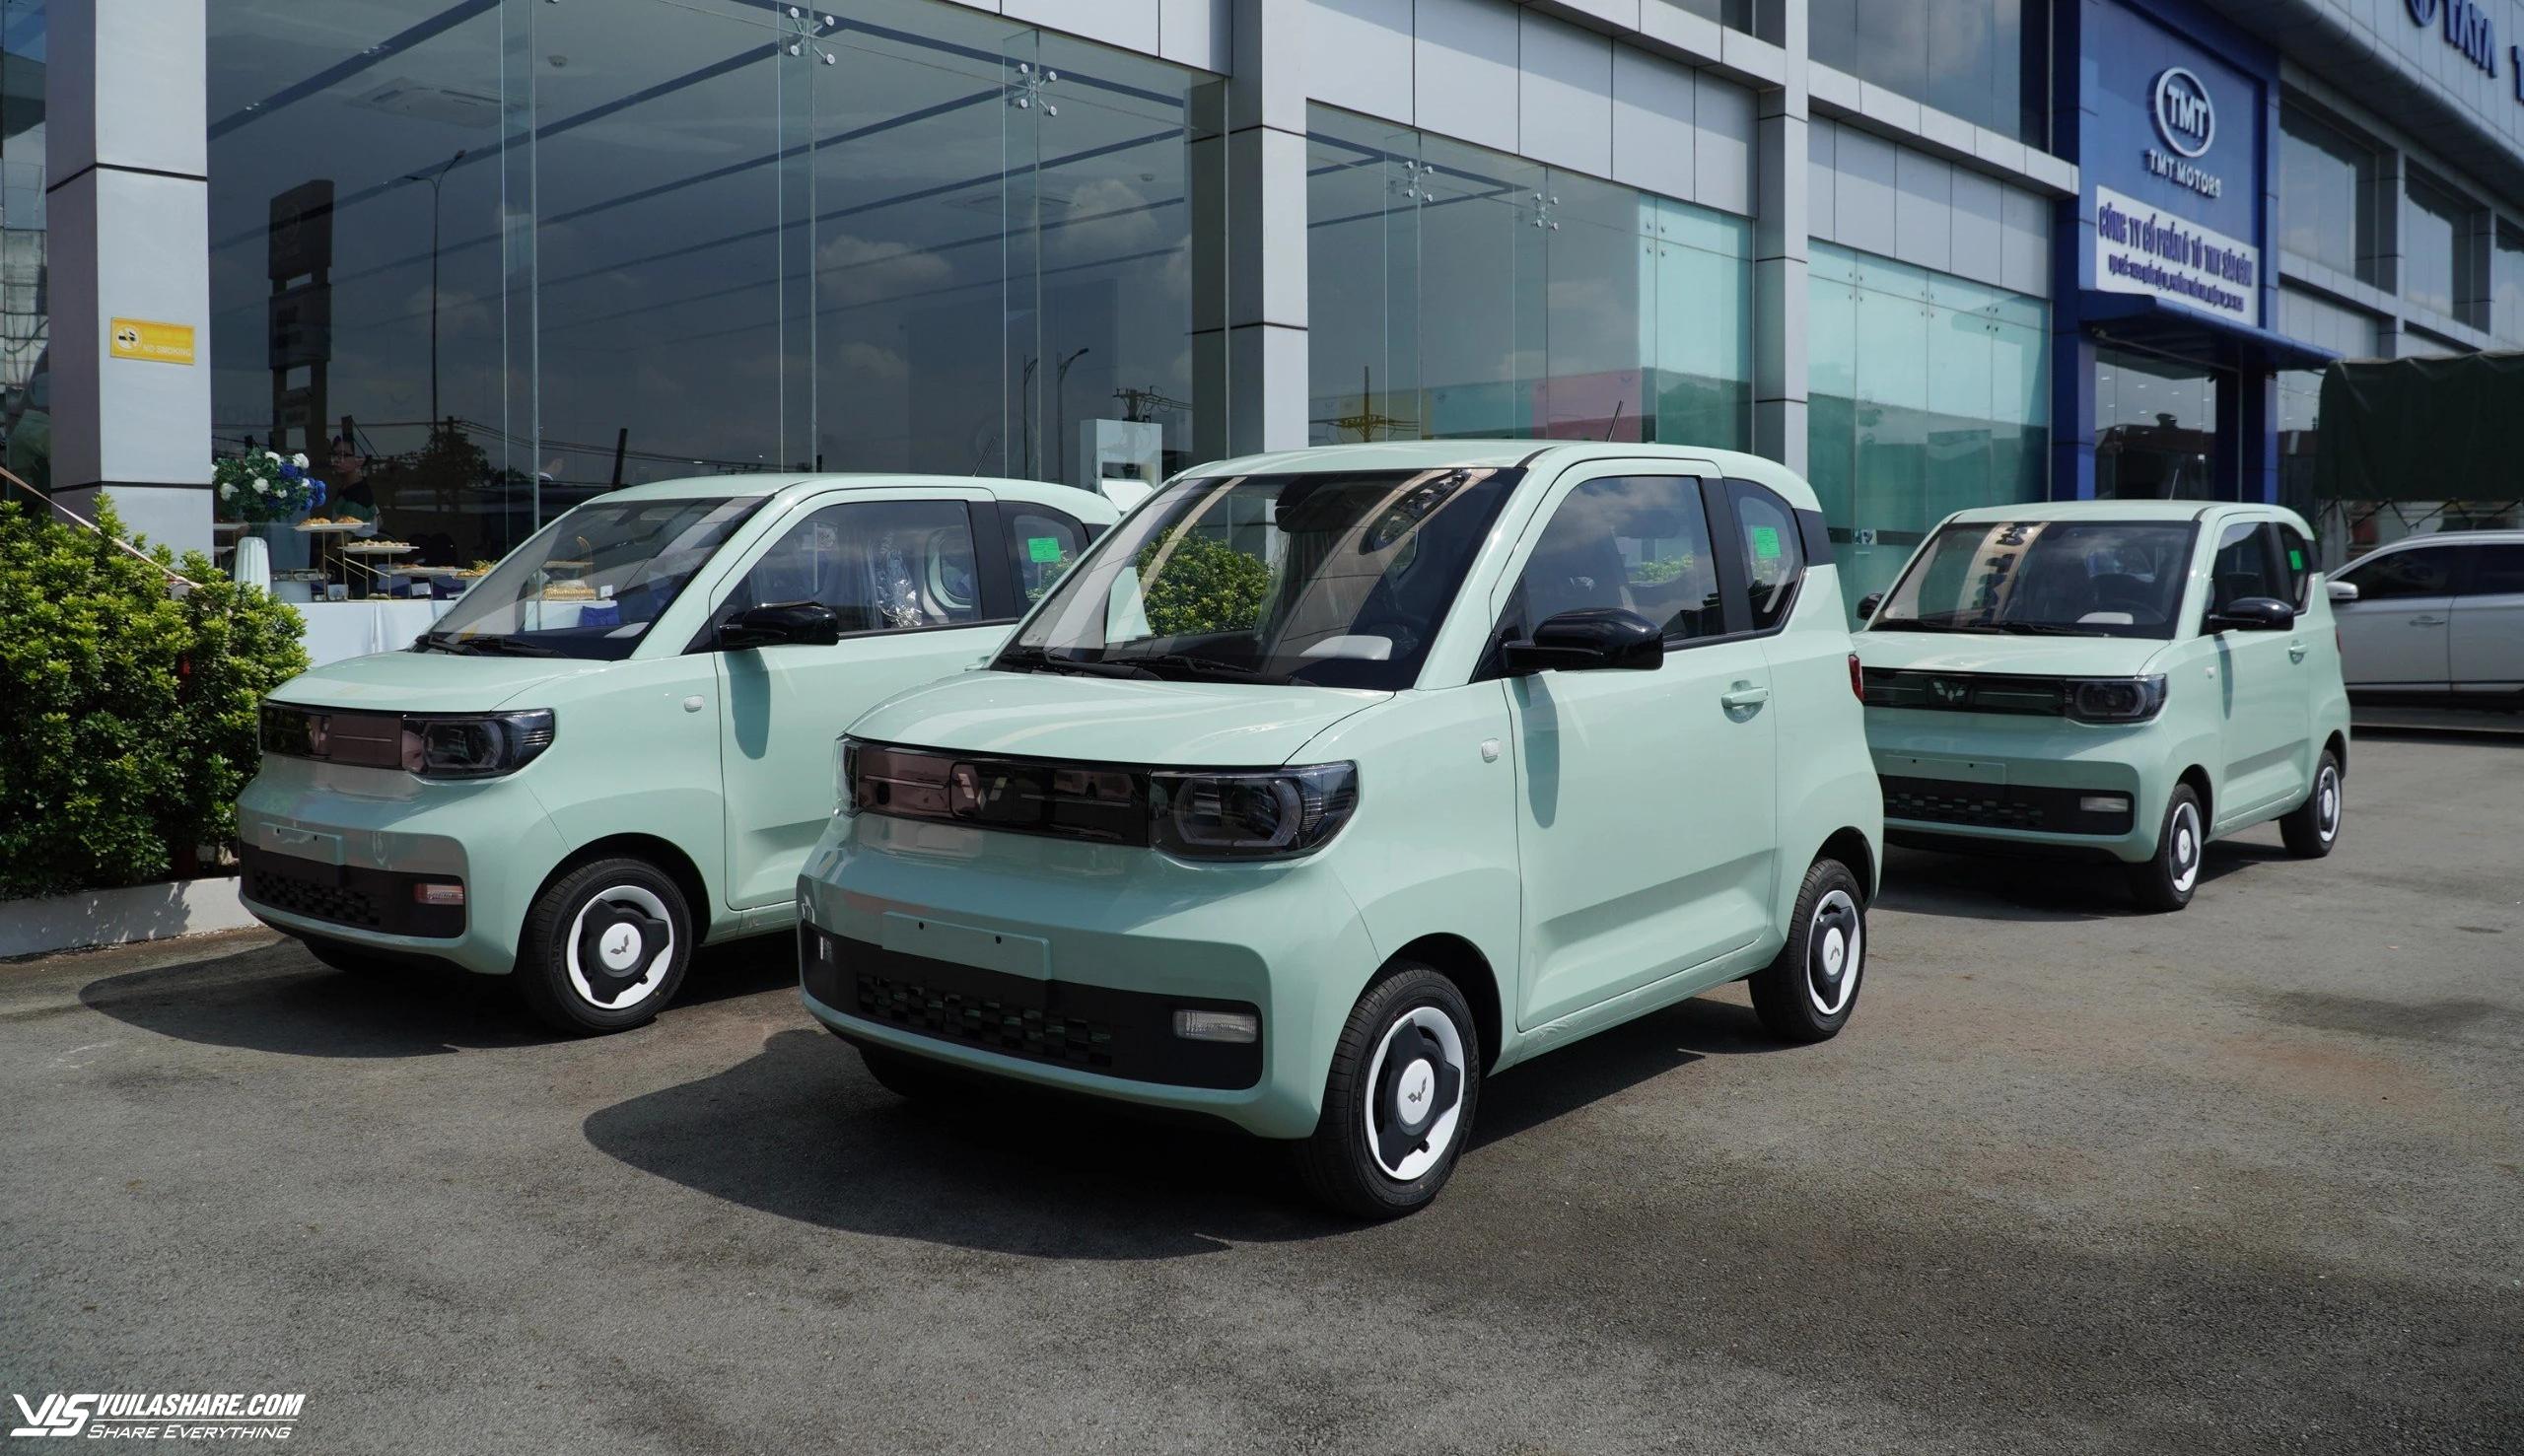 Mức thu lệ phí trước bạ 0% với ô tô điện cũng được xem là một khía cạnh để các thương hiệu ô tô Trung Quốc vốn có thể mạnh về xe xanh có thể phát huy lợi thế